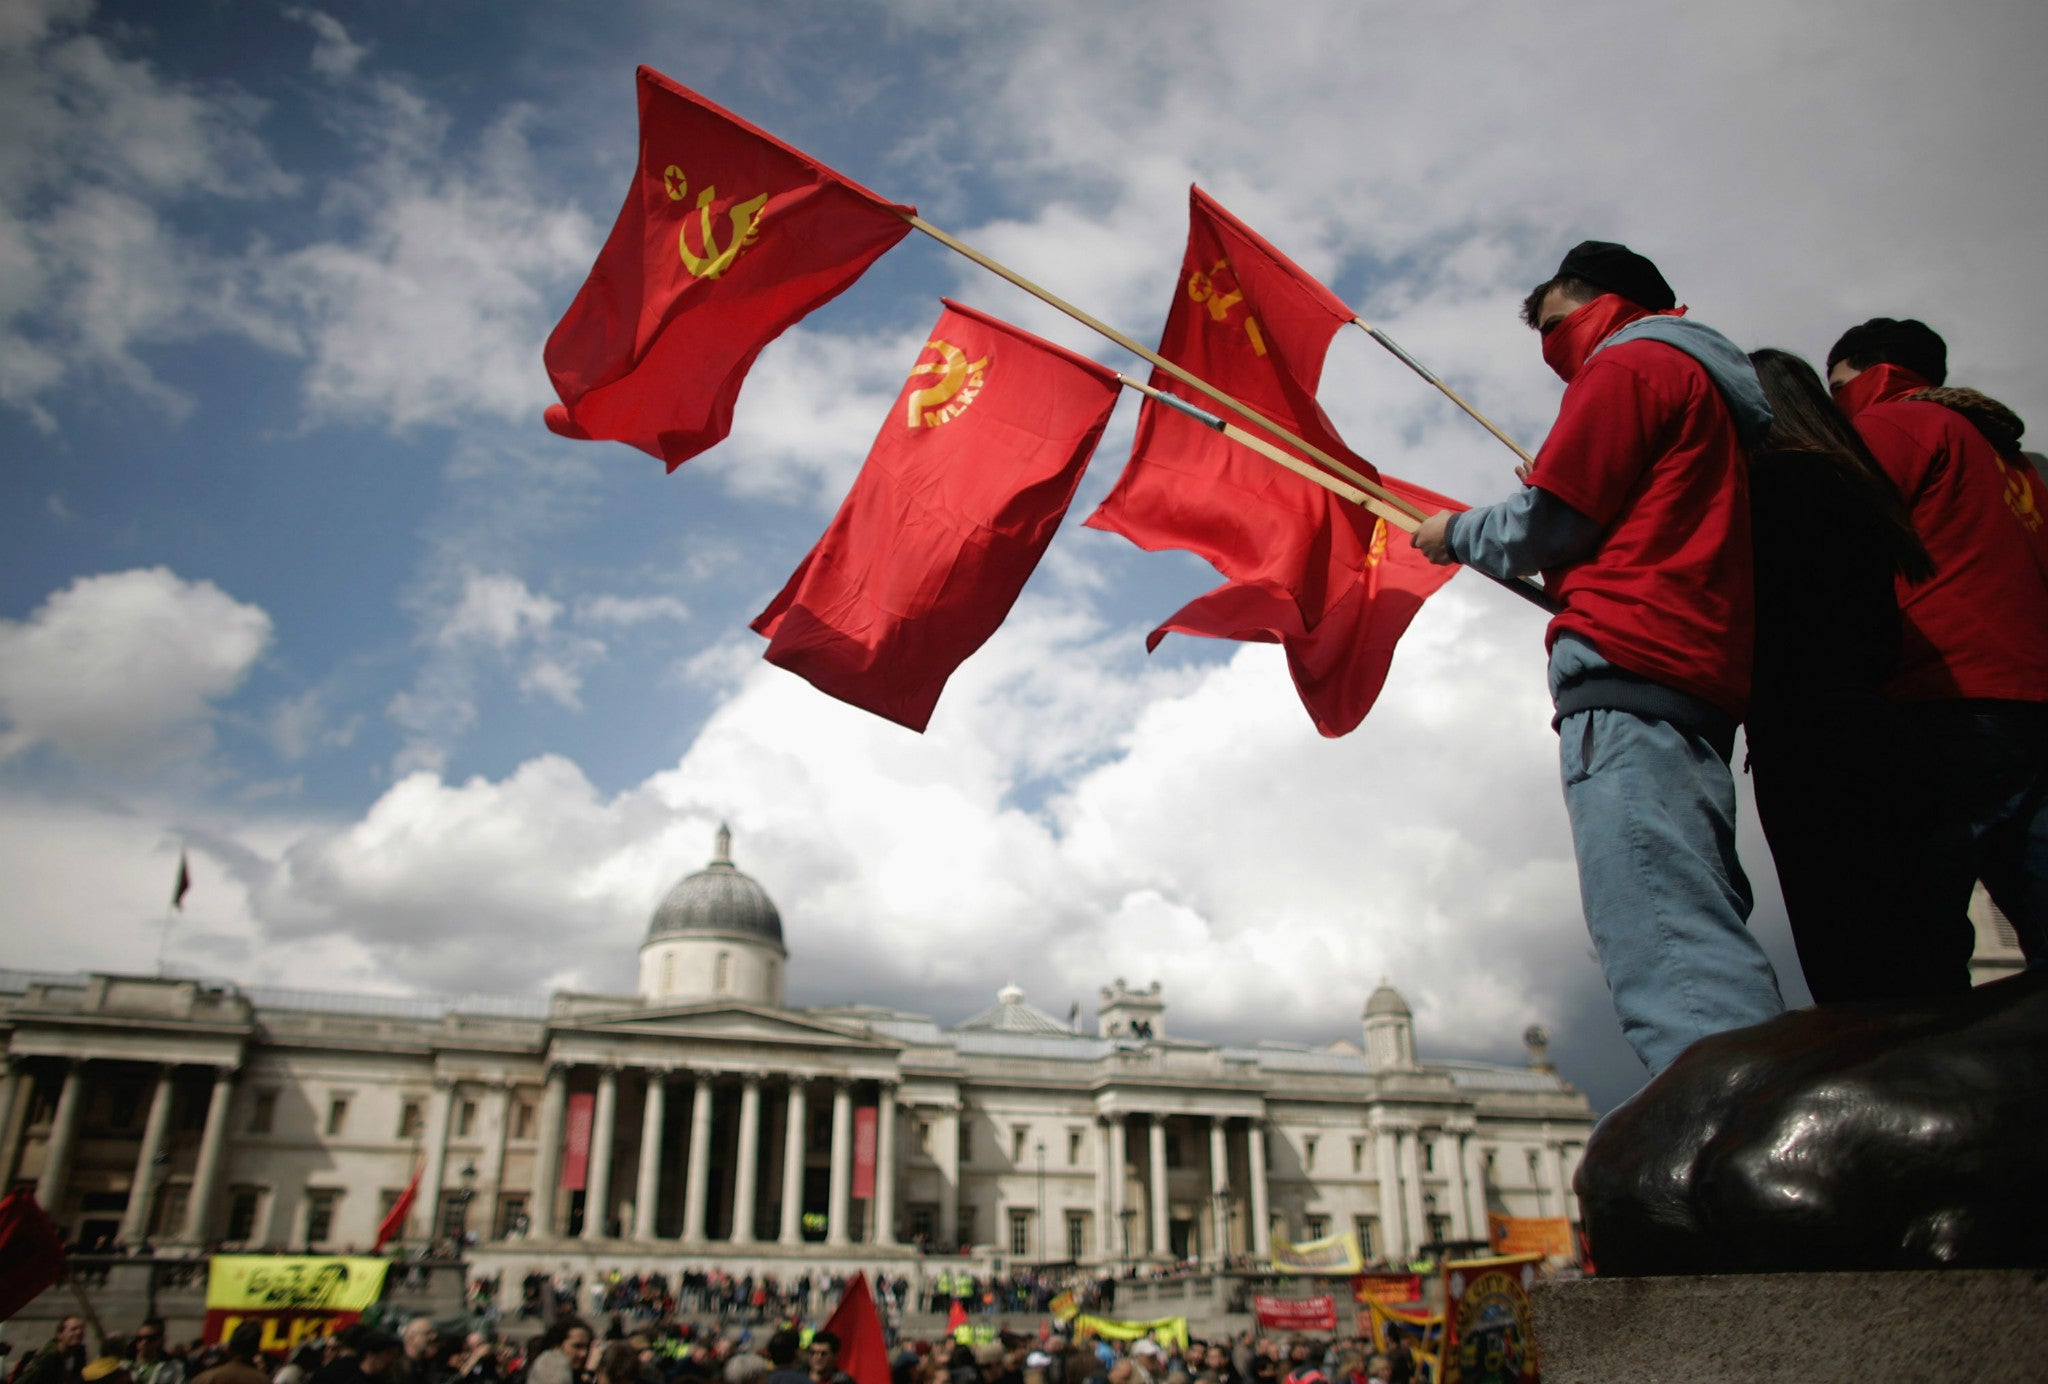 Flying the flag for socialism: demonstrators in Trafalgar Square